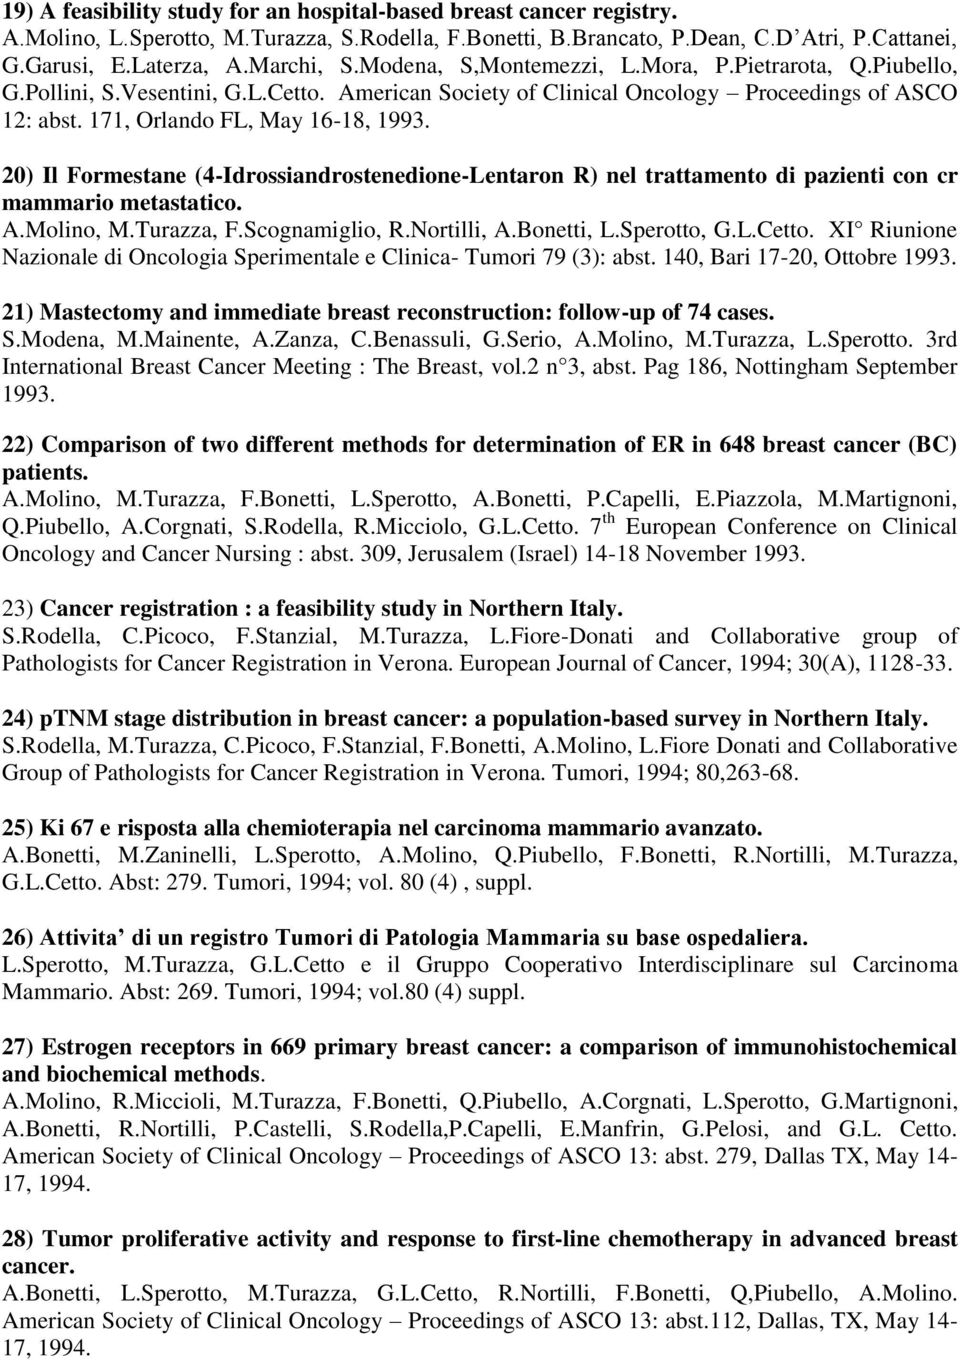 20) Il Formestane (4-Idrossiandrostenedione-Lentaron R) nel trattamento di pazienti con cr mammario metastatico. A.Molino, M.Turazza, F.Scognamiglio, R.Nortilli, A.Bonetti, L.Sperotto, G.L.Cetto.